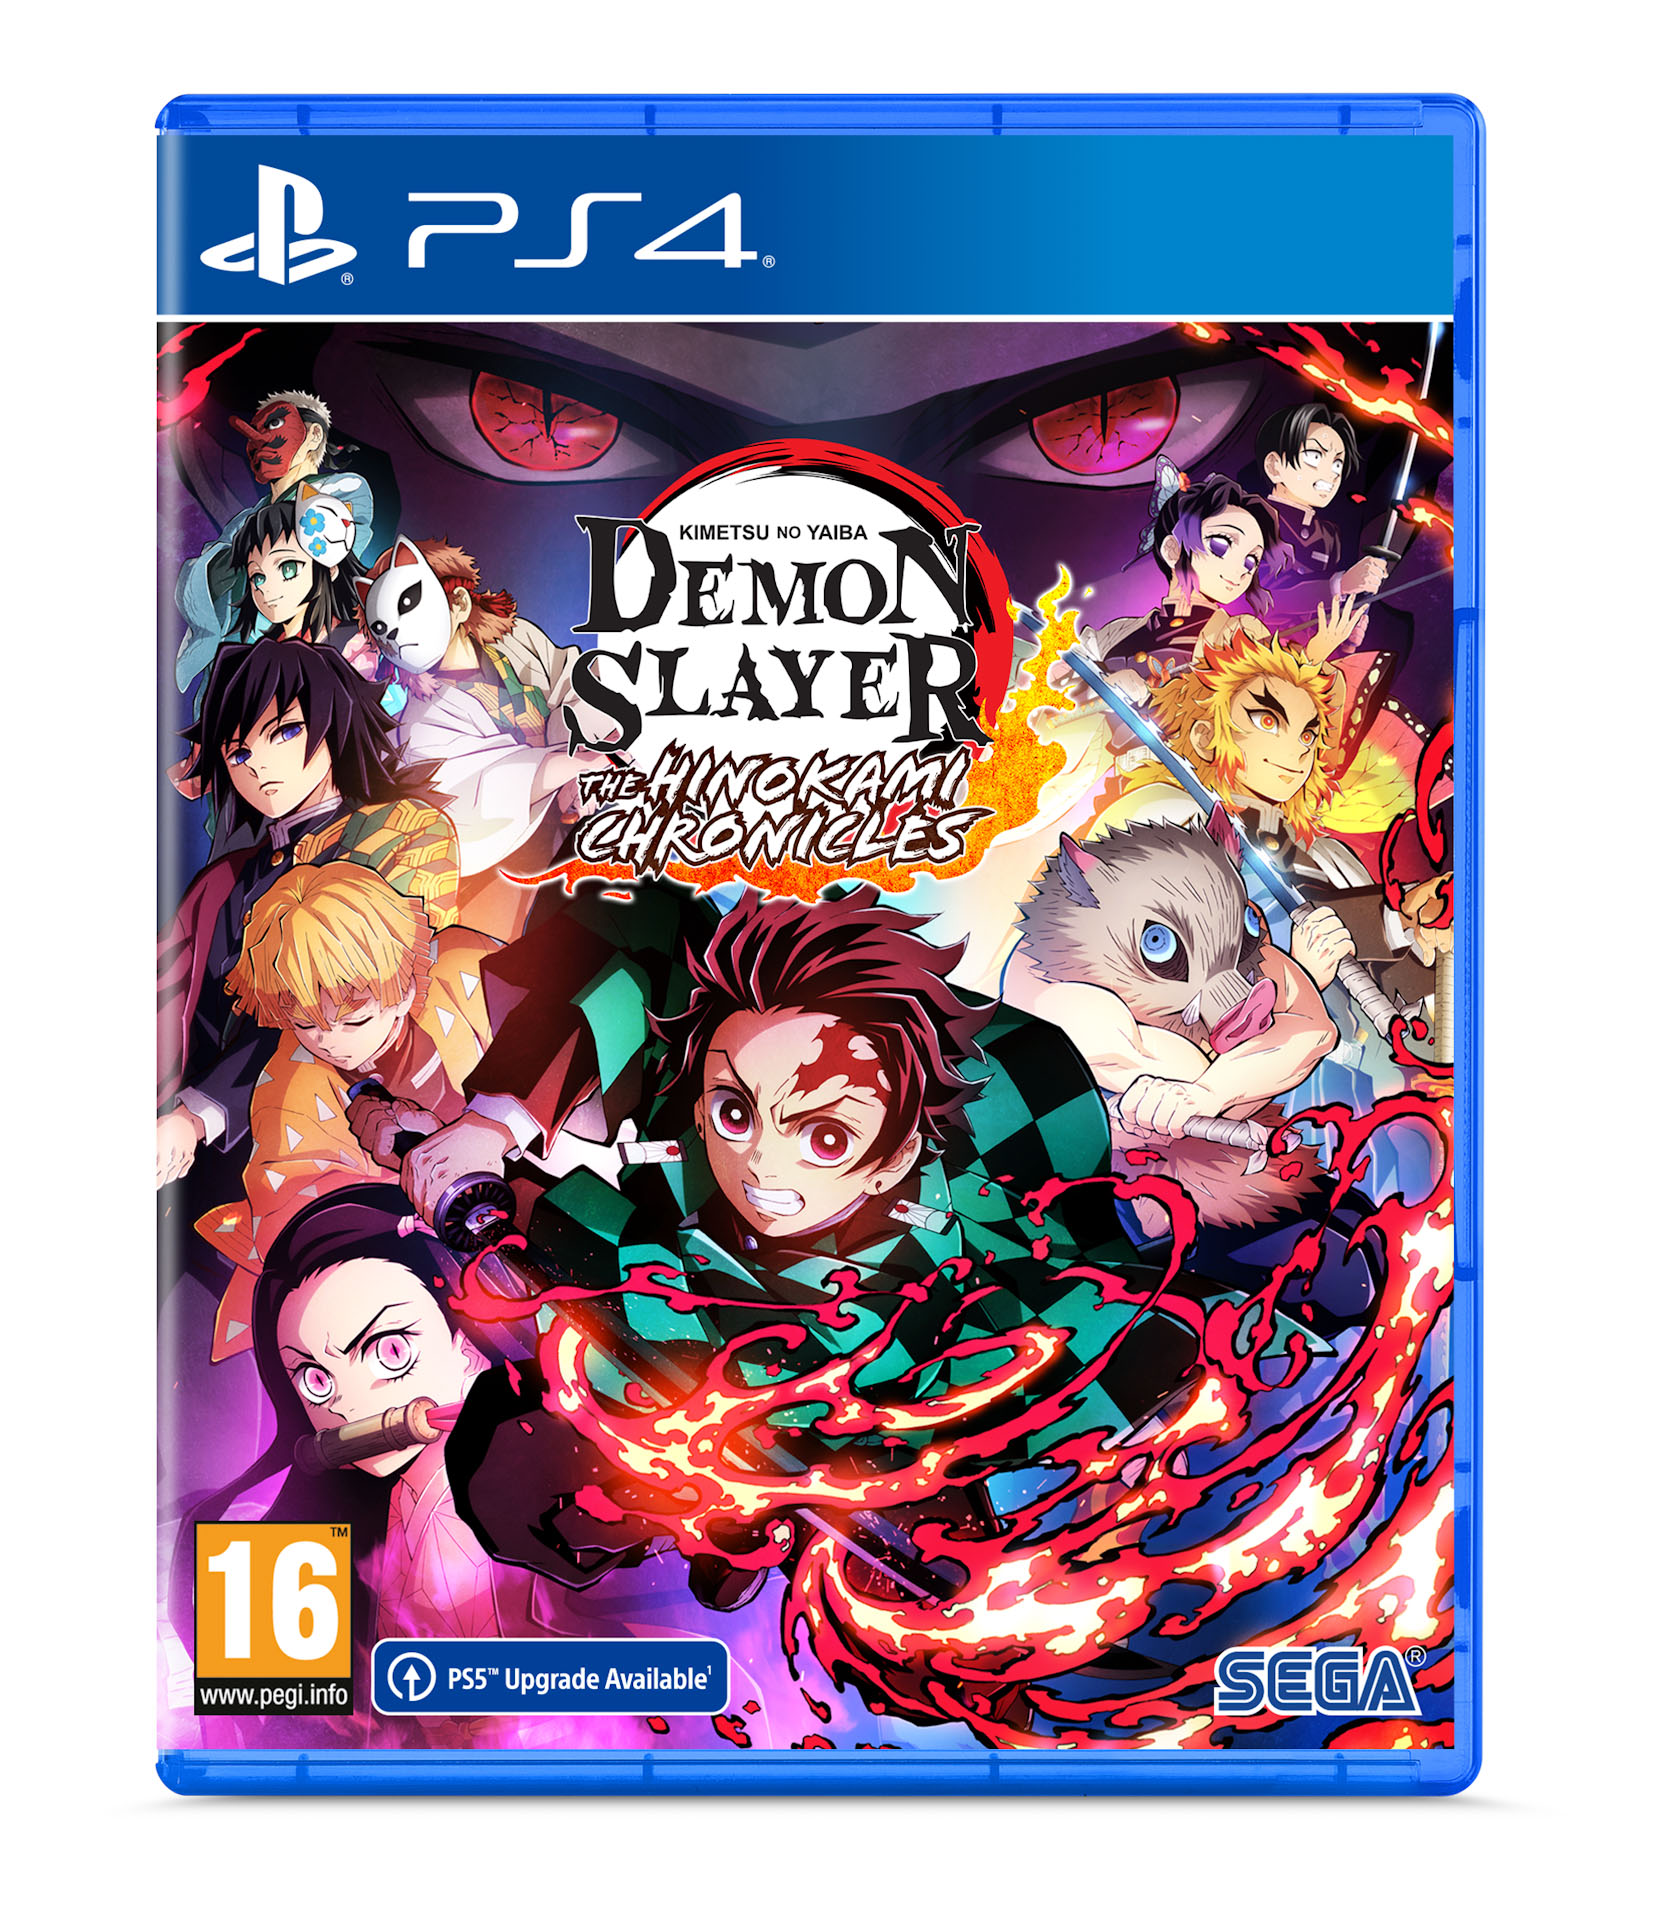 Demon Slayer 3 PS4 - SEGA 1.12.01.01.043